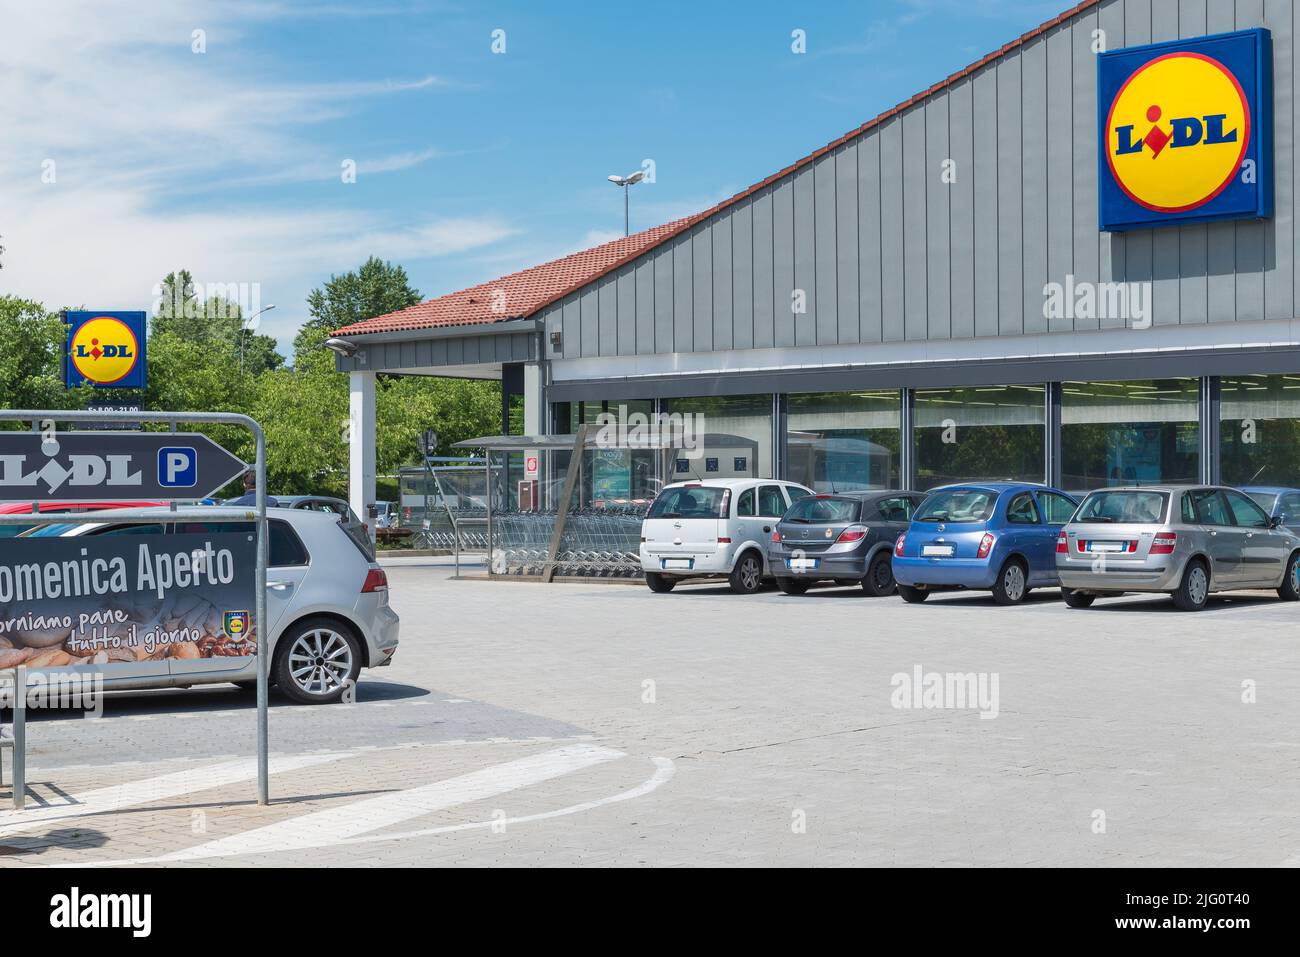 Supermercado Lidl. Lidl Stiftung & Co. KG es una cadena alemana de supermercados de descuento con más de 10.000 tiendas en Europa y Estados Unidos. Foto de stock